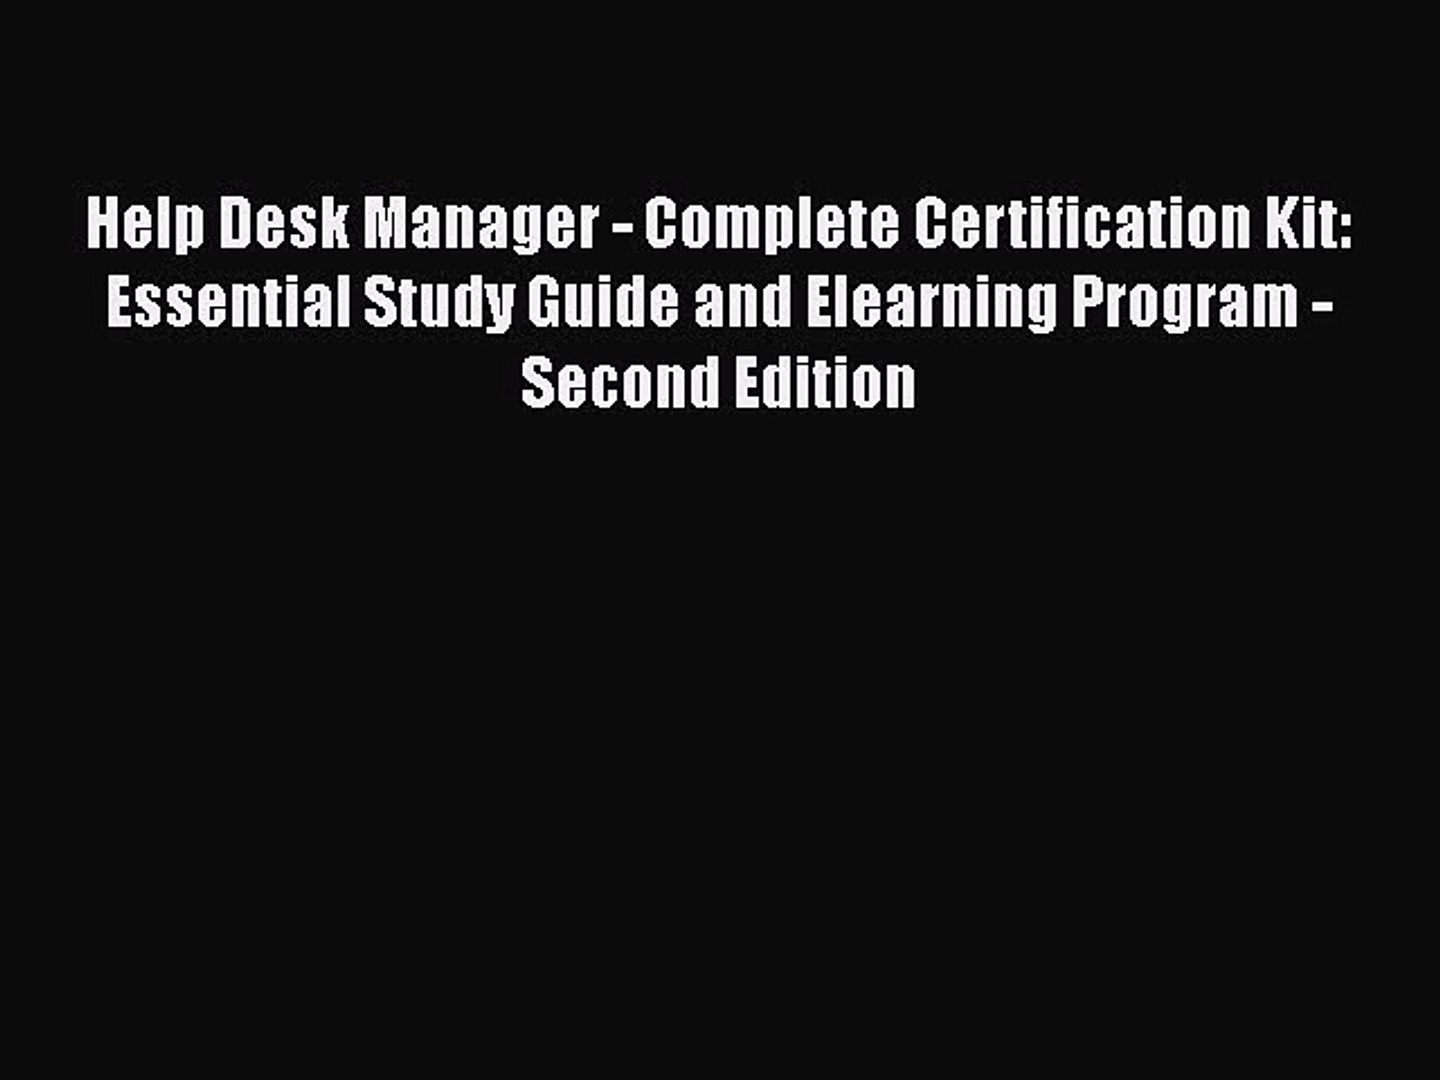 Pdf Download Help Desk Manager Complete Certification Kit